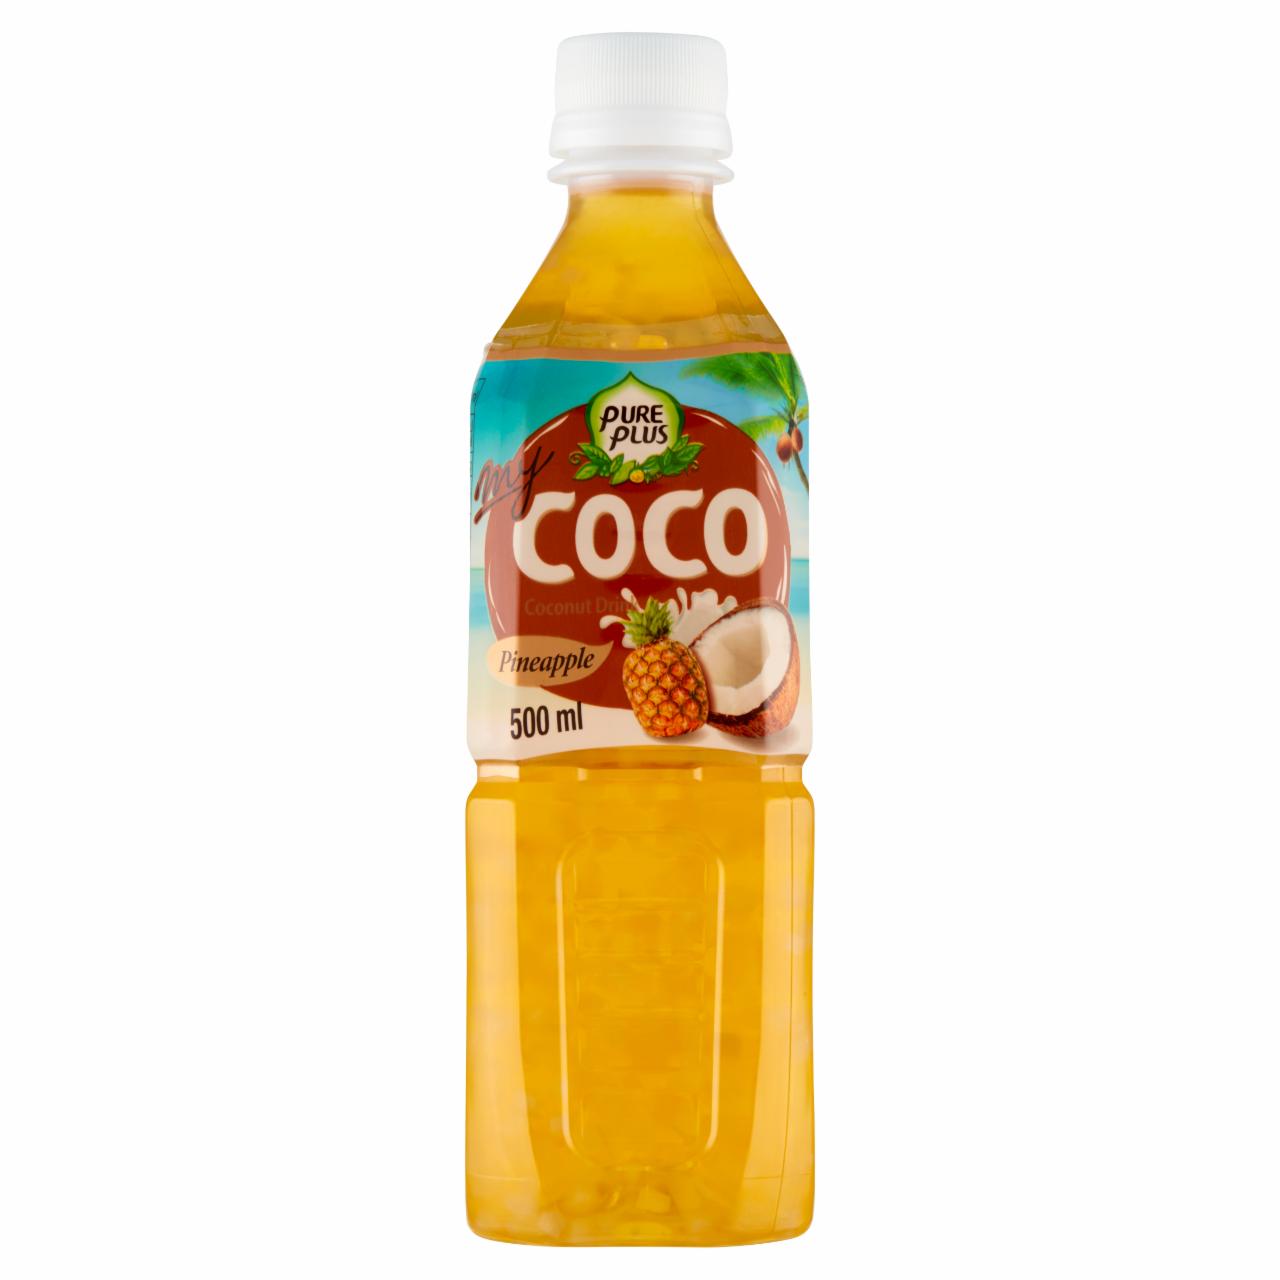 Zdjęcia - Pure Plus My Coco Napój z kokosem o smaku ananasowym 500 ml